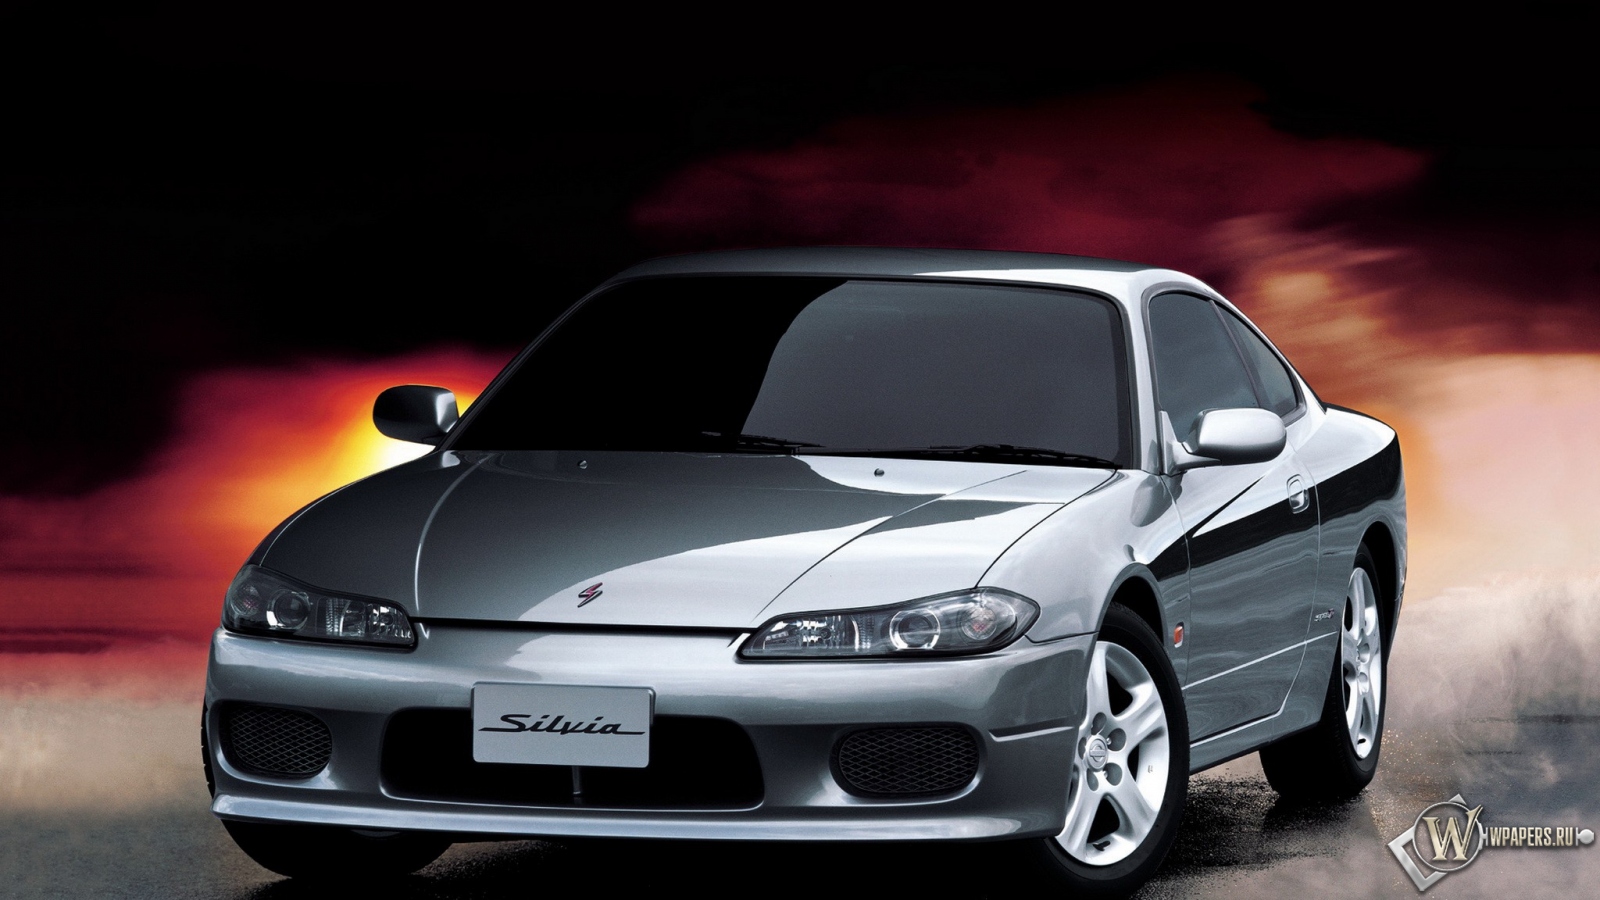 Nissan Silvia spec r 1600x900